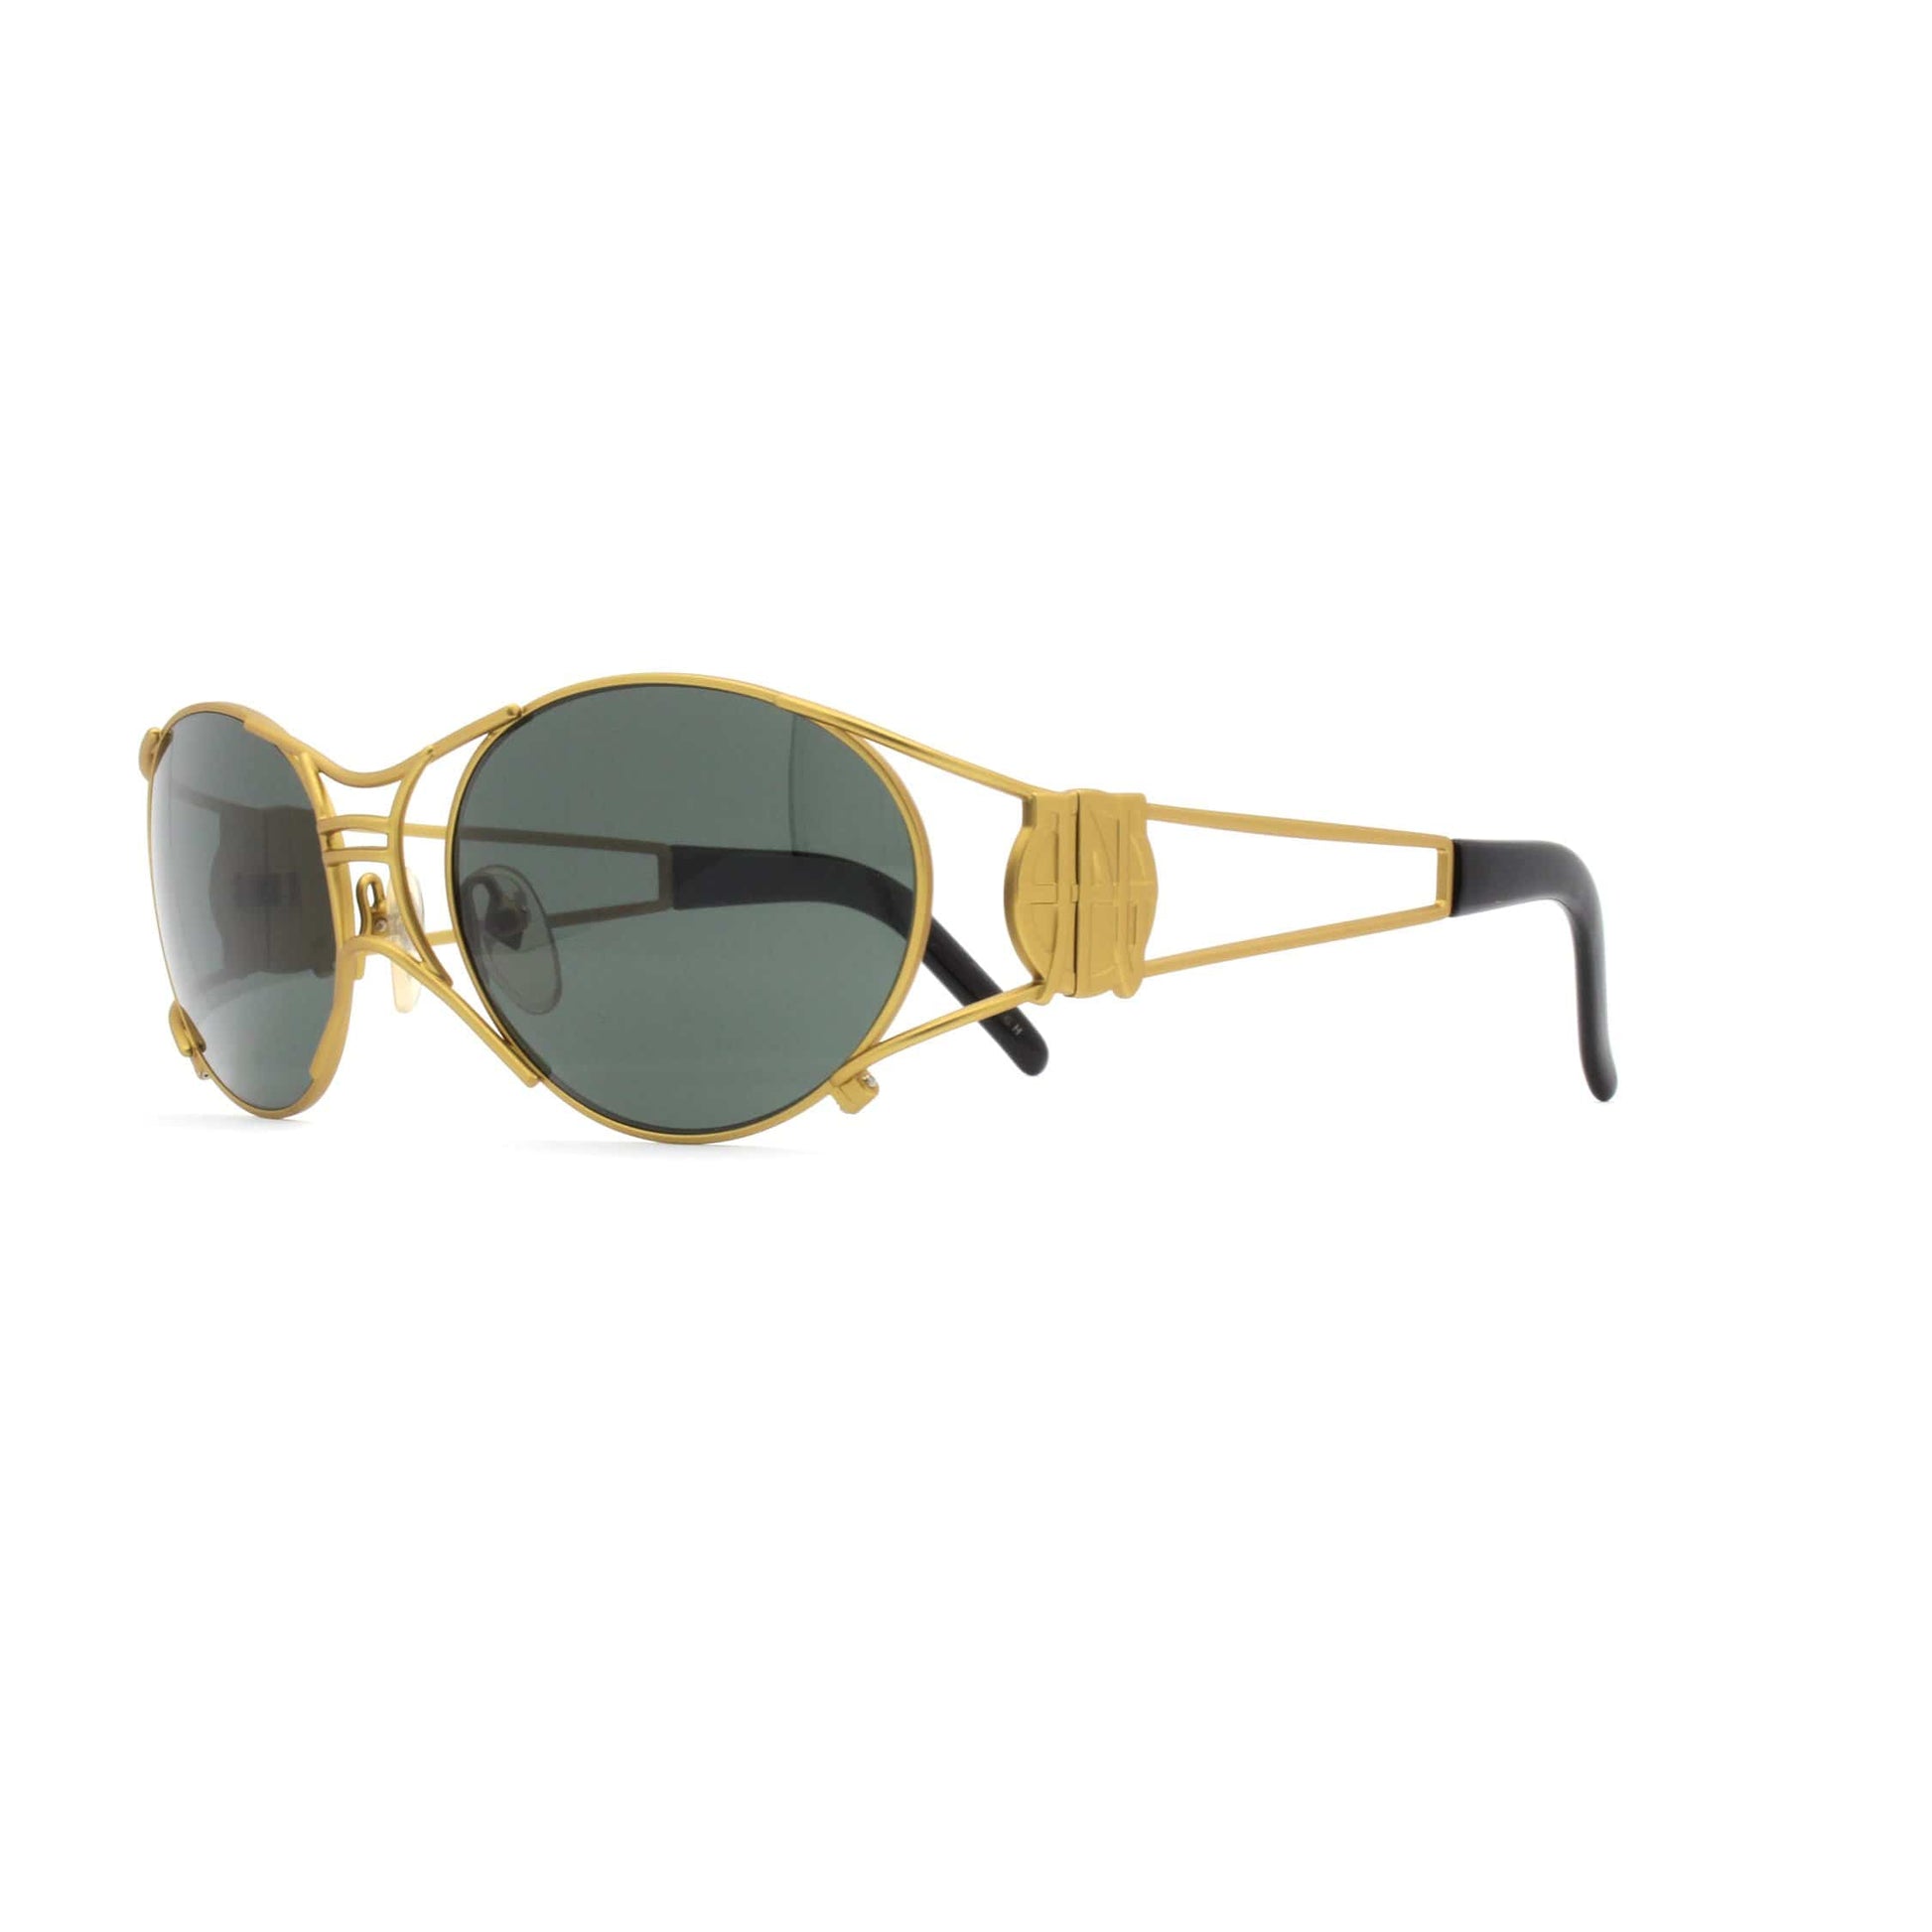 Gold Vintage Jean Paul Gaultier 58-6101 Sunglasses RSTKD Vintage